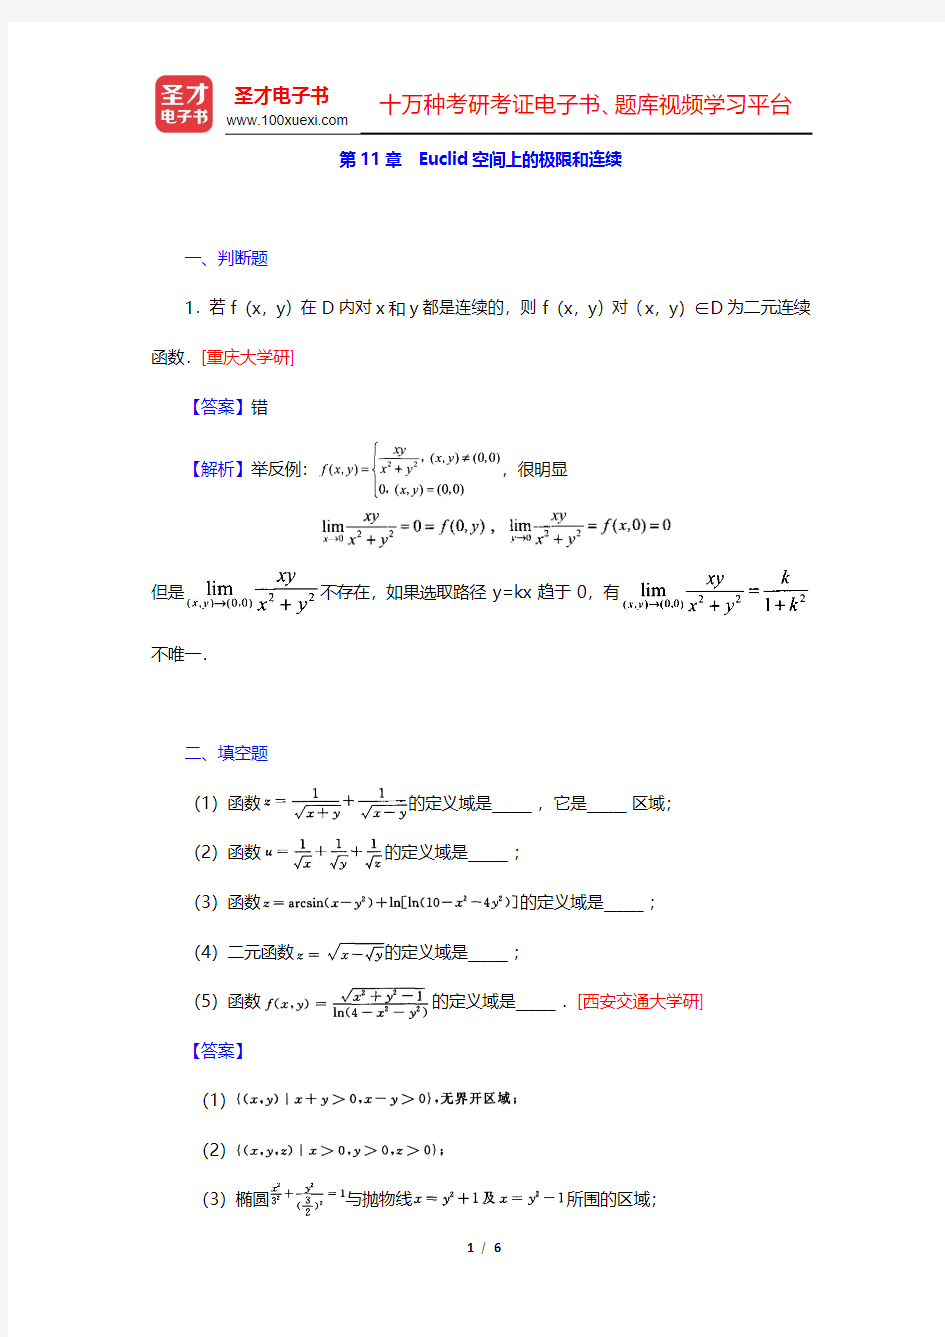 陈纪修《数学分析》(第2版)(下册)名校考研真题-Euclid空间上的极限和连续(圣才出品)